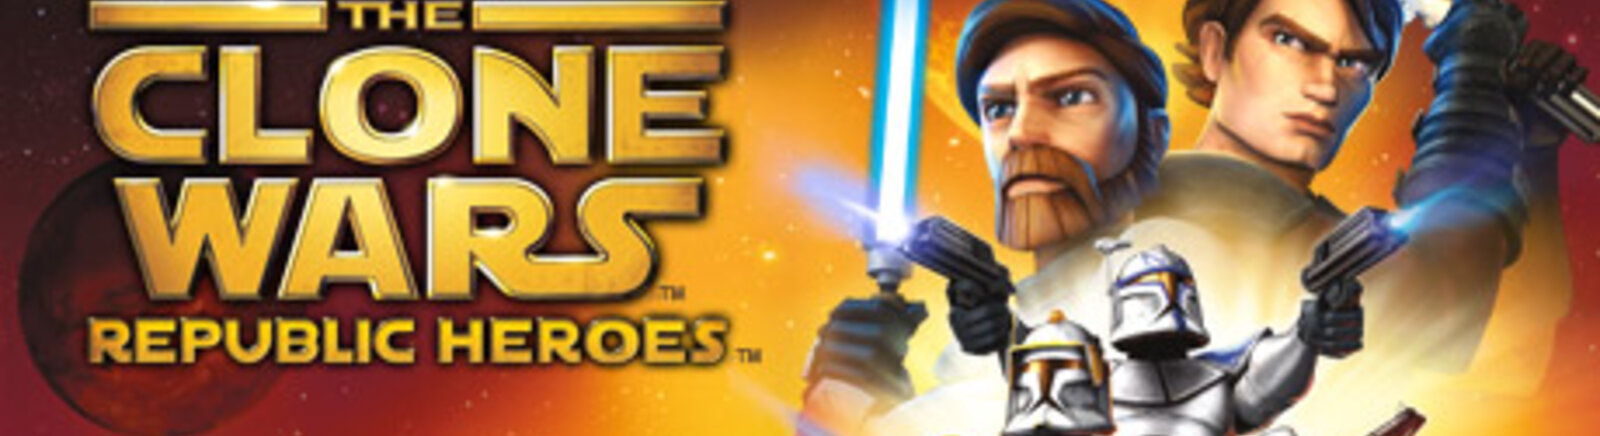 Дата выхода Star Wars: The Clone Wars - Republic Heroes  на PC, PS3 и Xbox 360 в России и во всем мире